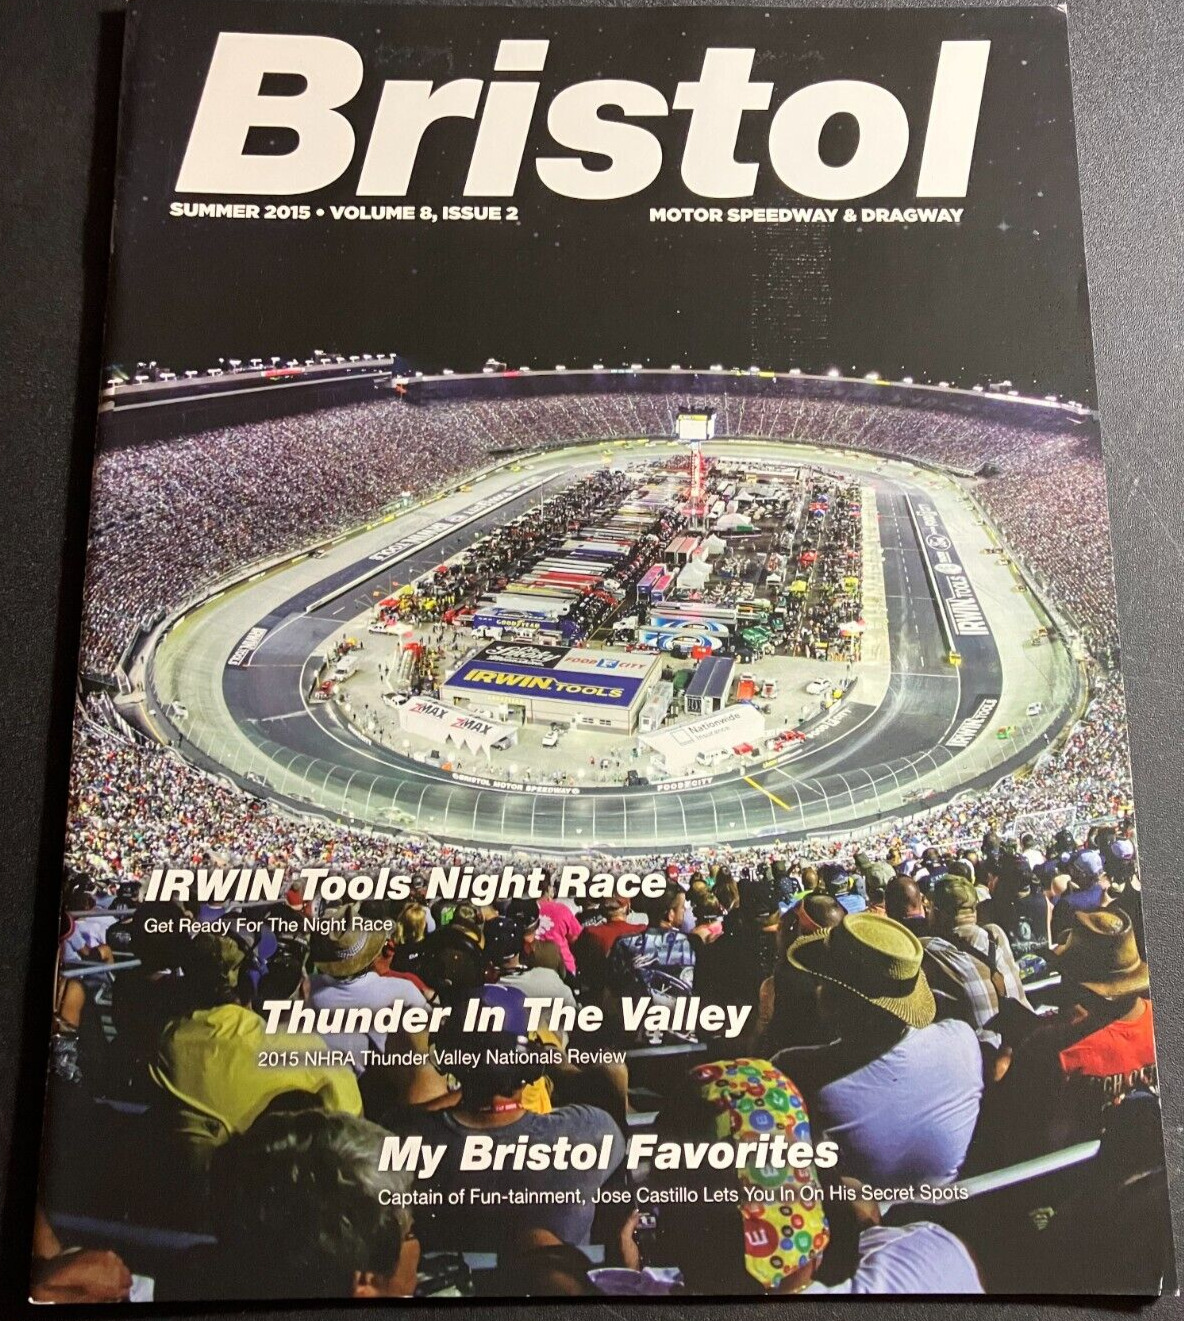 Bristol Motor Speedway & Dragway Magazine - Summer 2015 Vol. 8 Issue 2